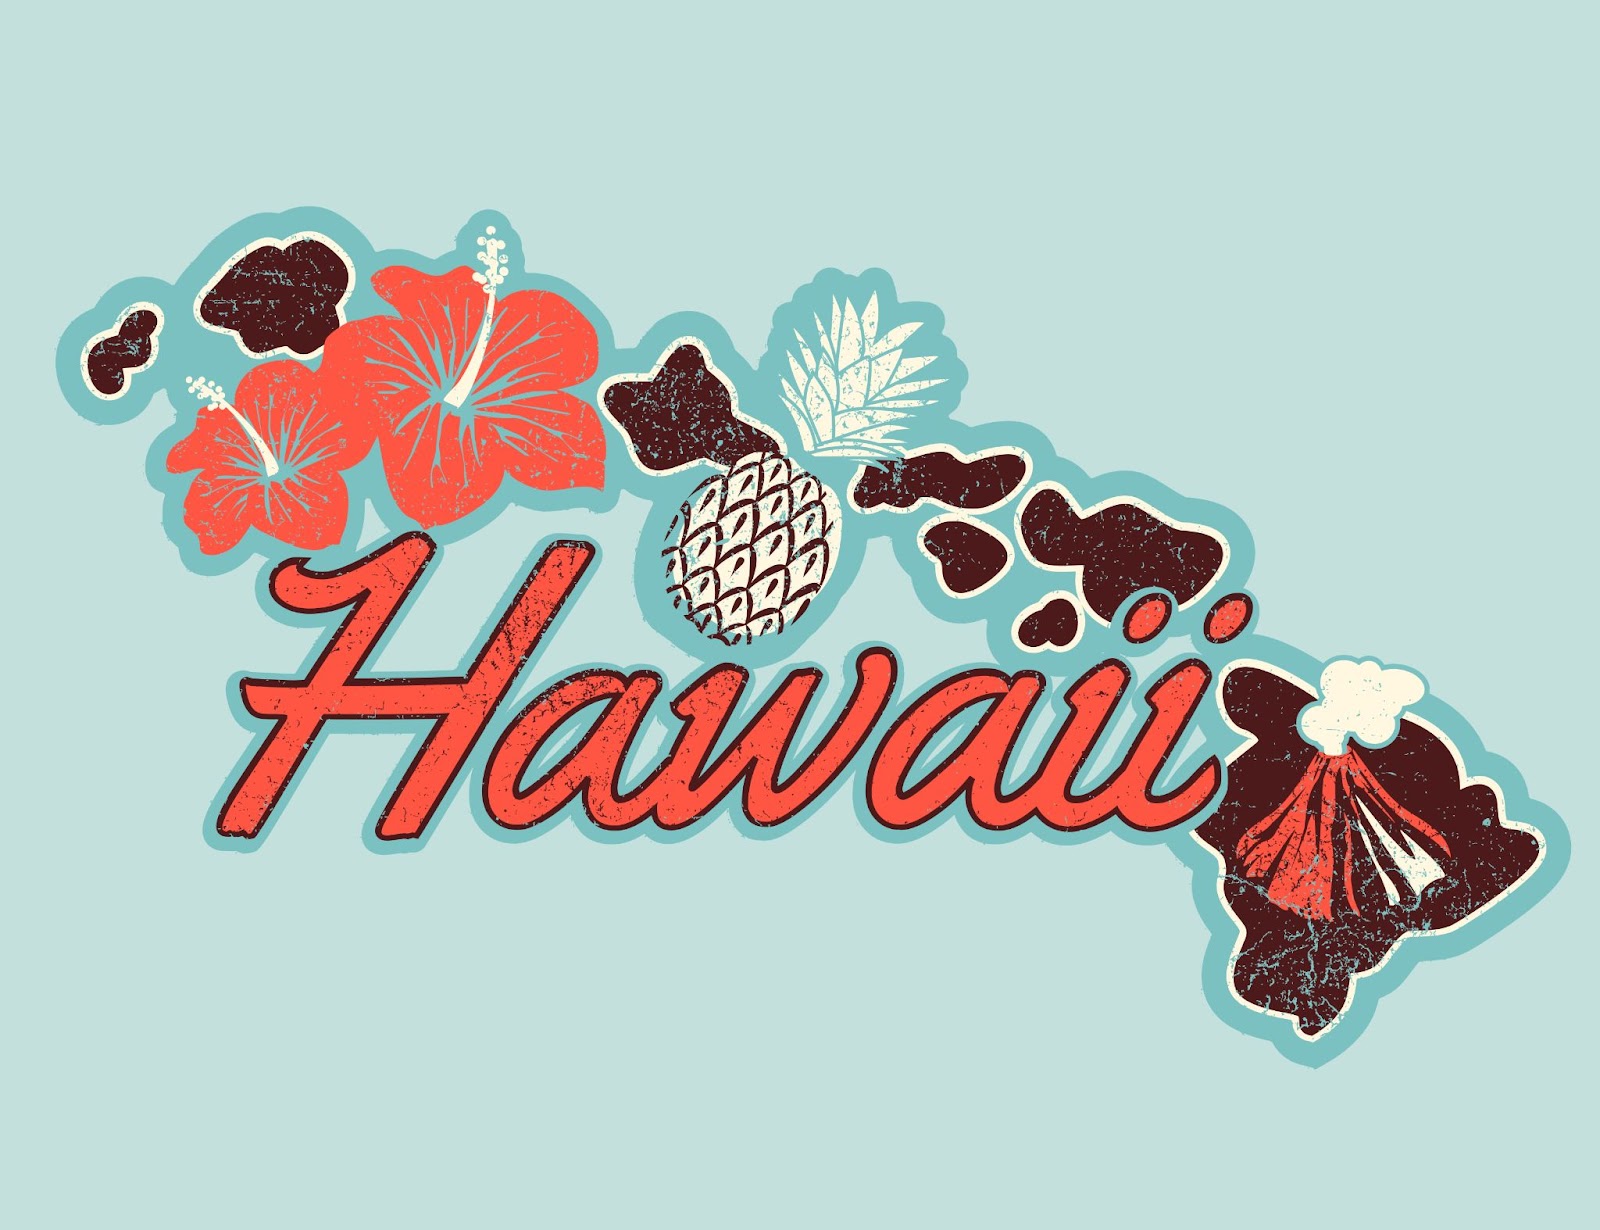 Immagine vettoriale con scritte e simboli delle isole Hawaii